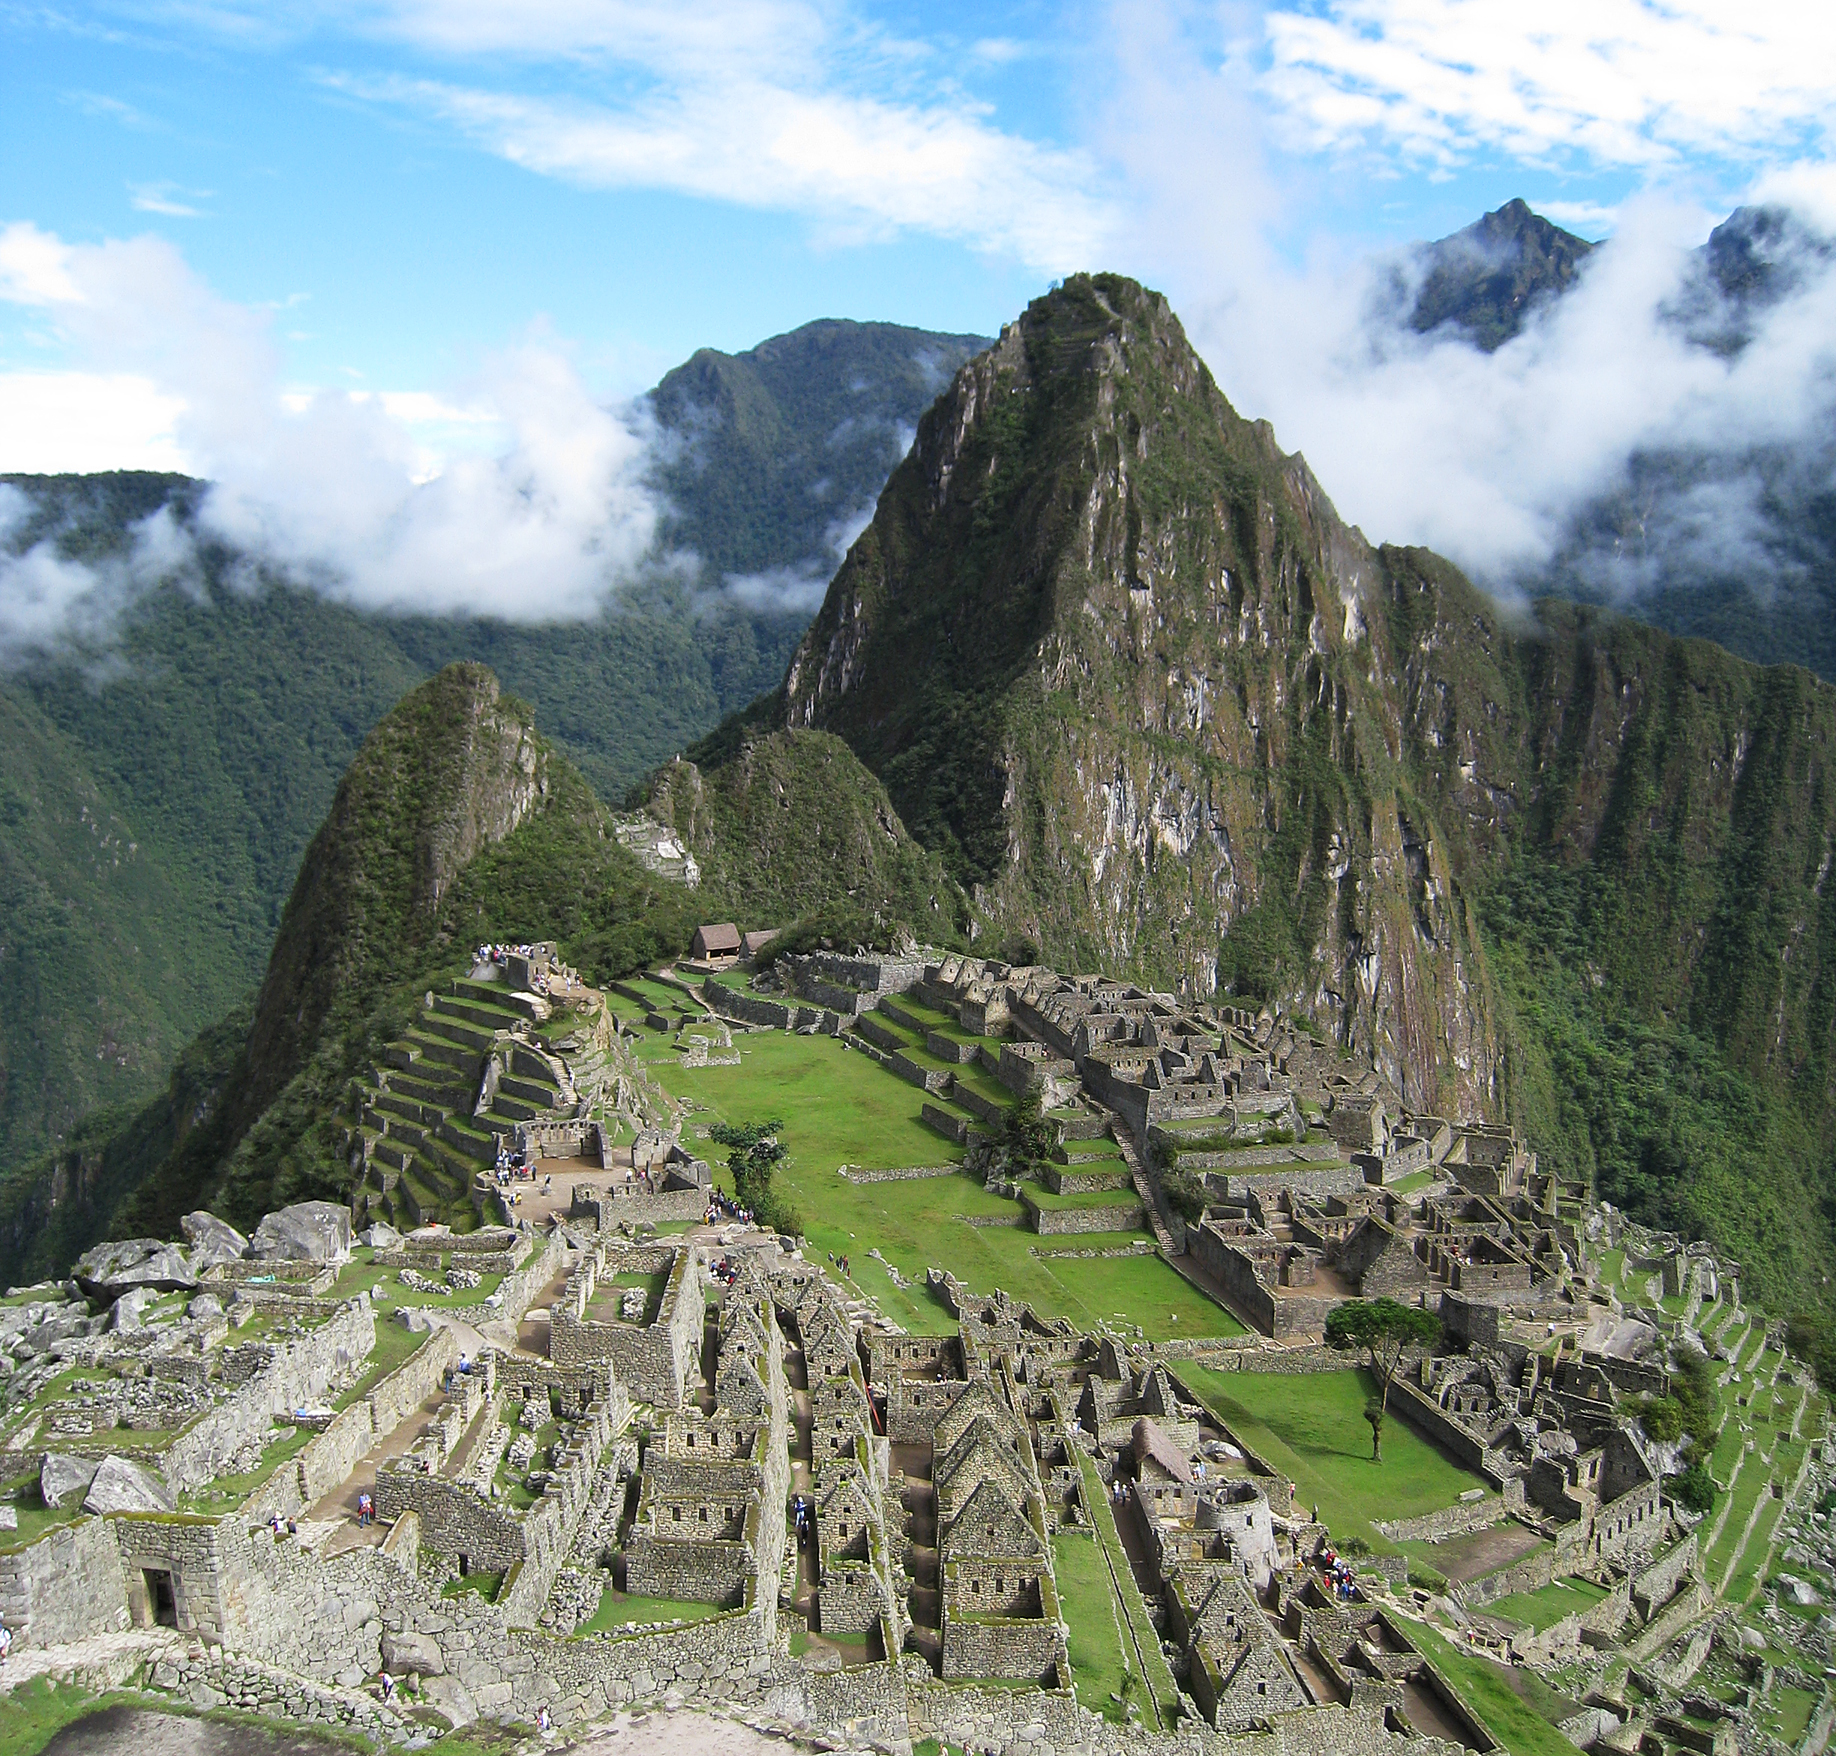 Lieux sacrés (3) Le Machu Picchu, miroir de nos fantasmes archéologiques?